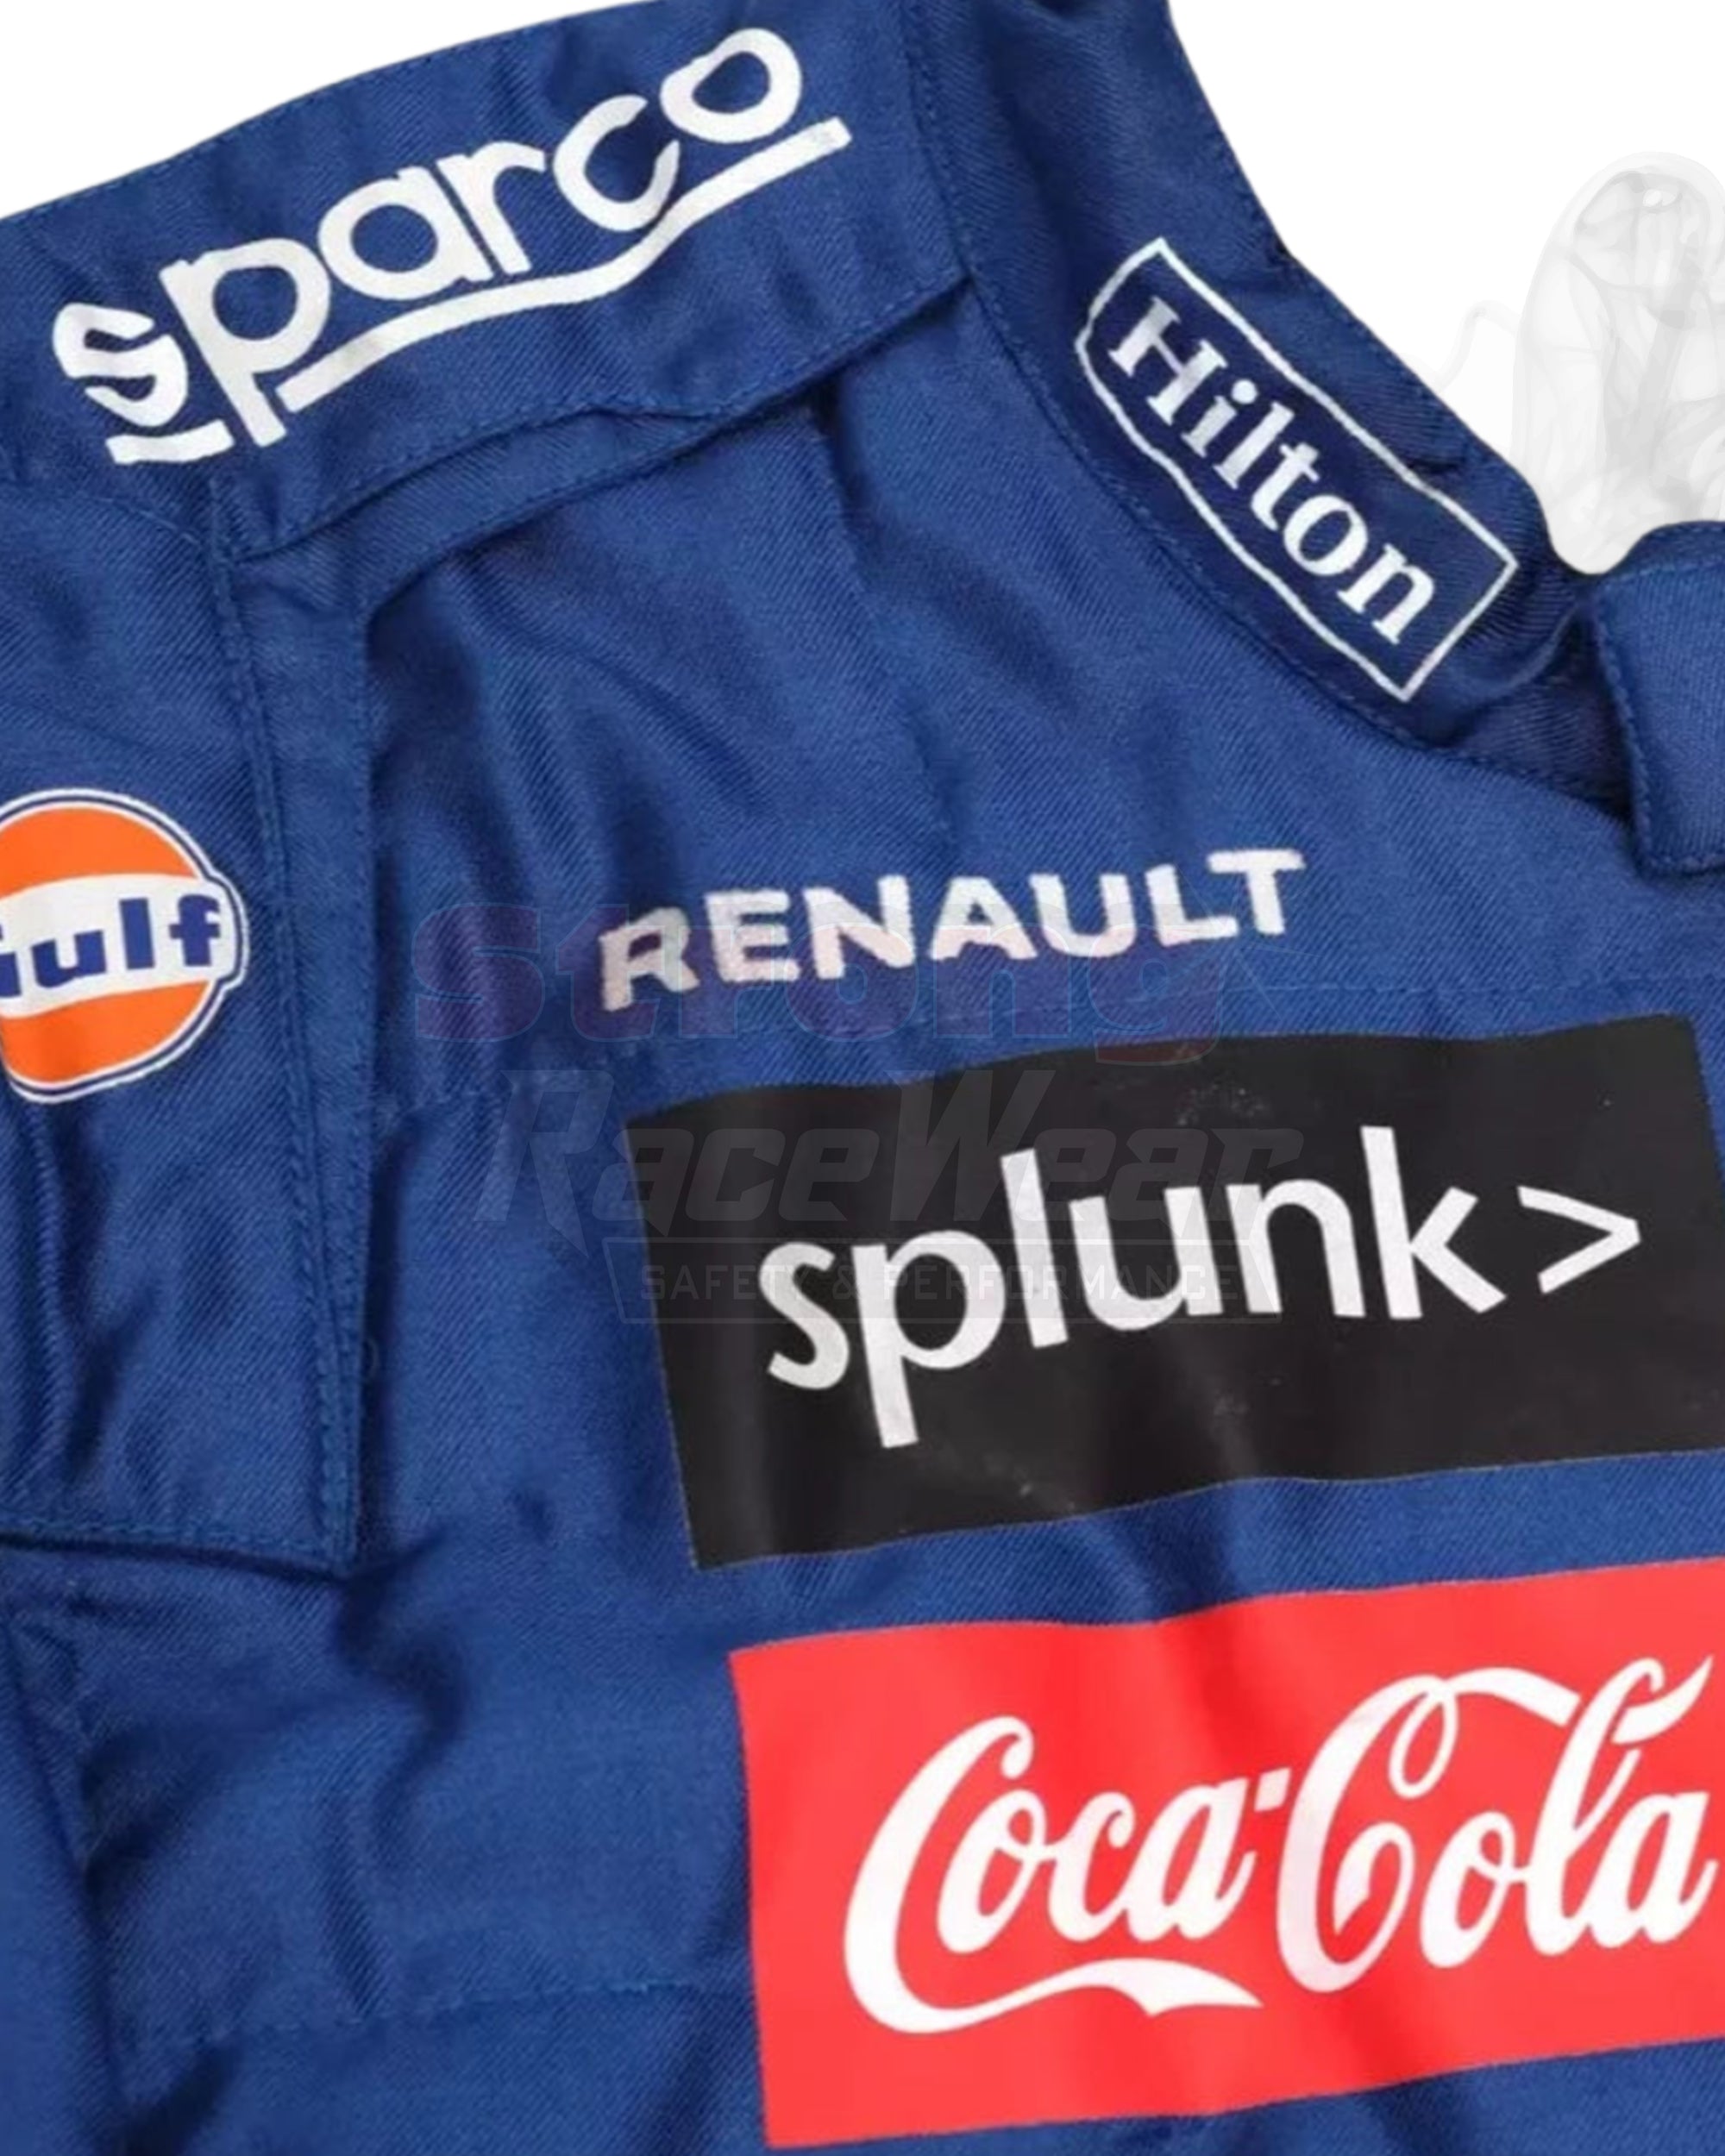 2020 Carlos Sainz McLaren Promo Formula 1 Racing Suit